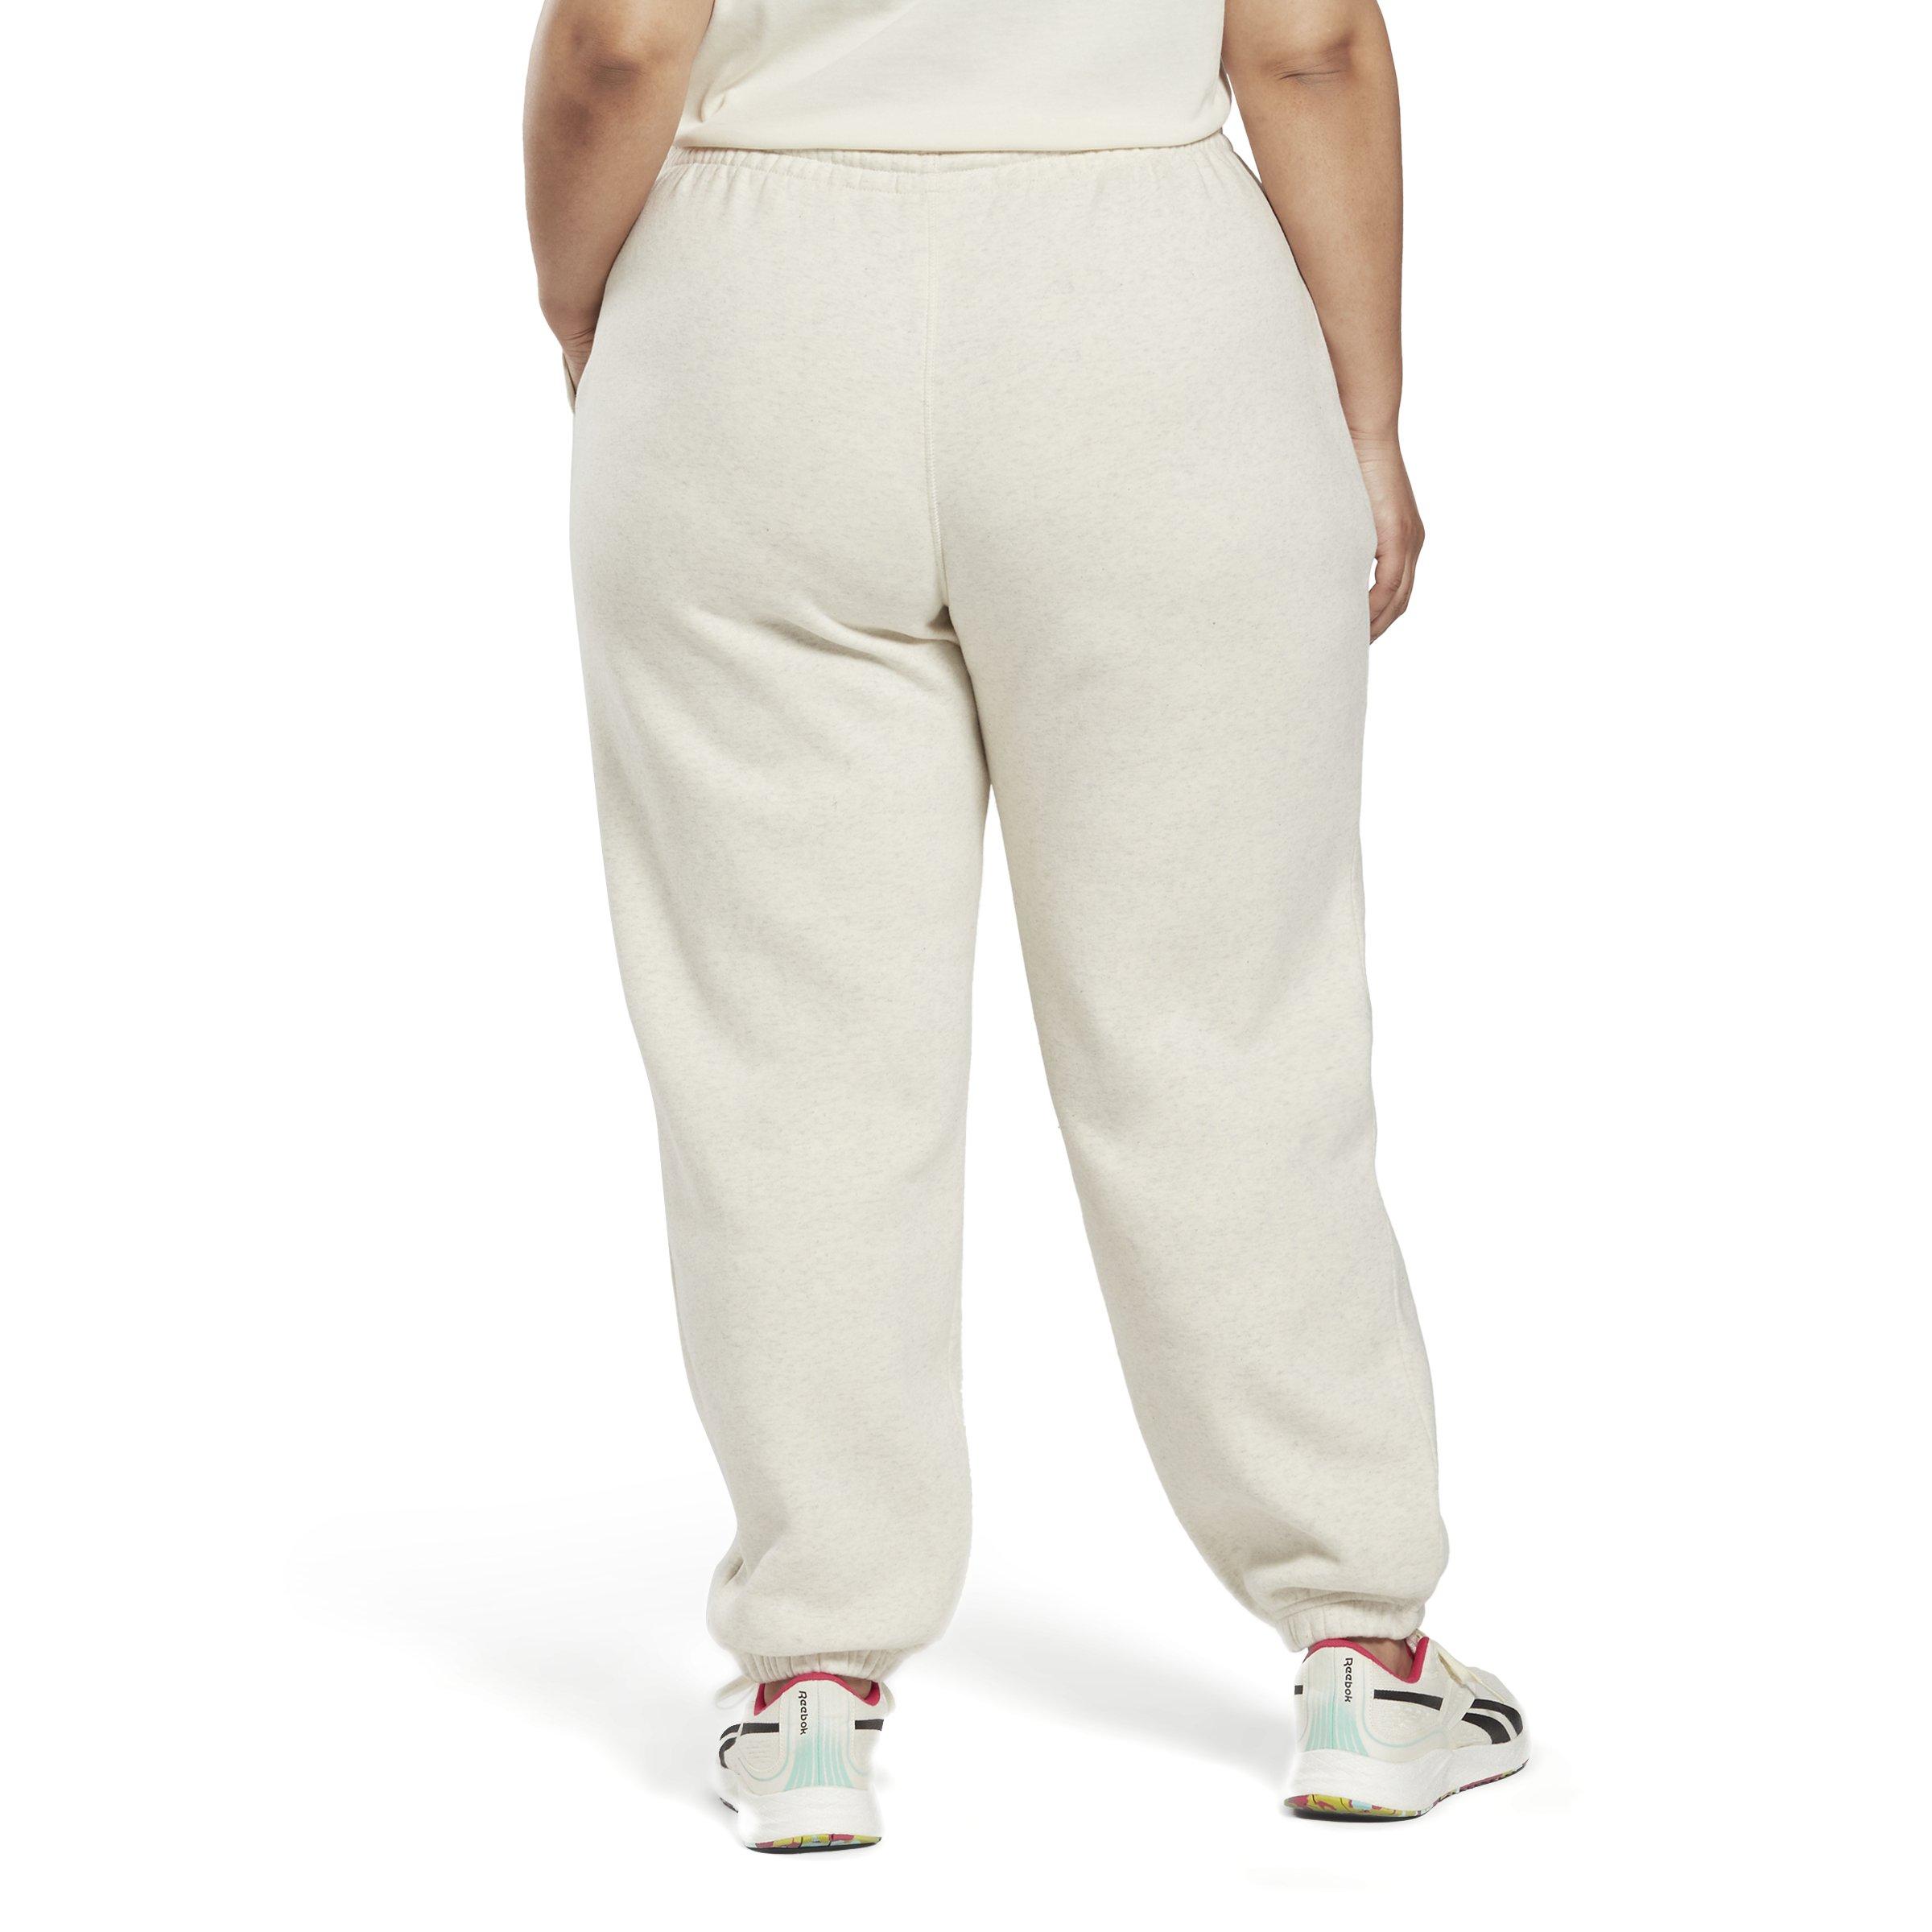 Reebok Women Identity Logo Fleece Joggers - Classic White Mel